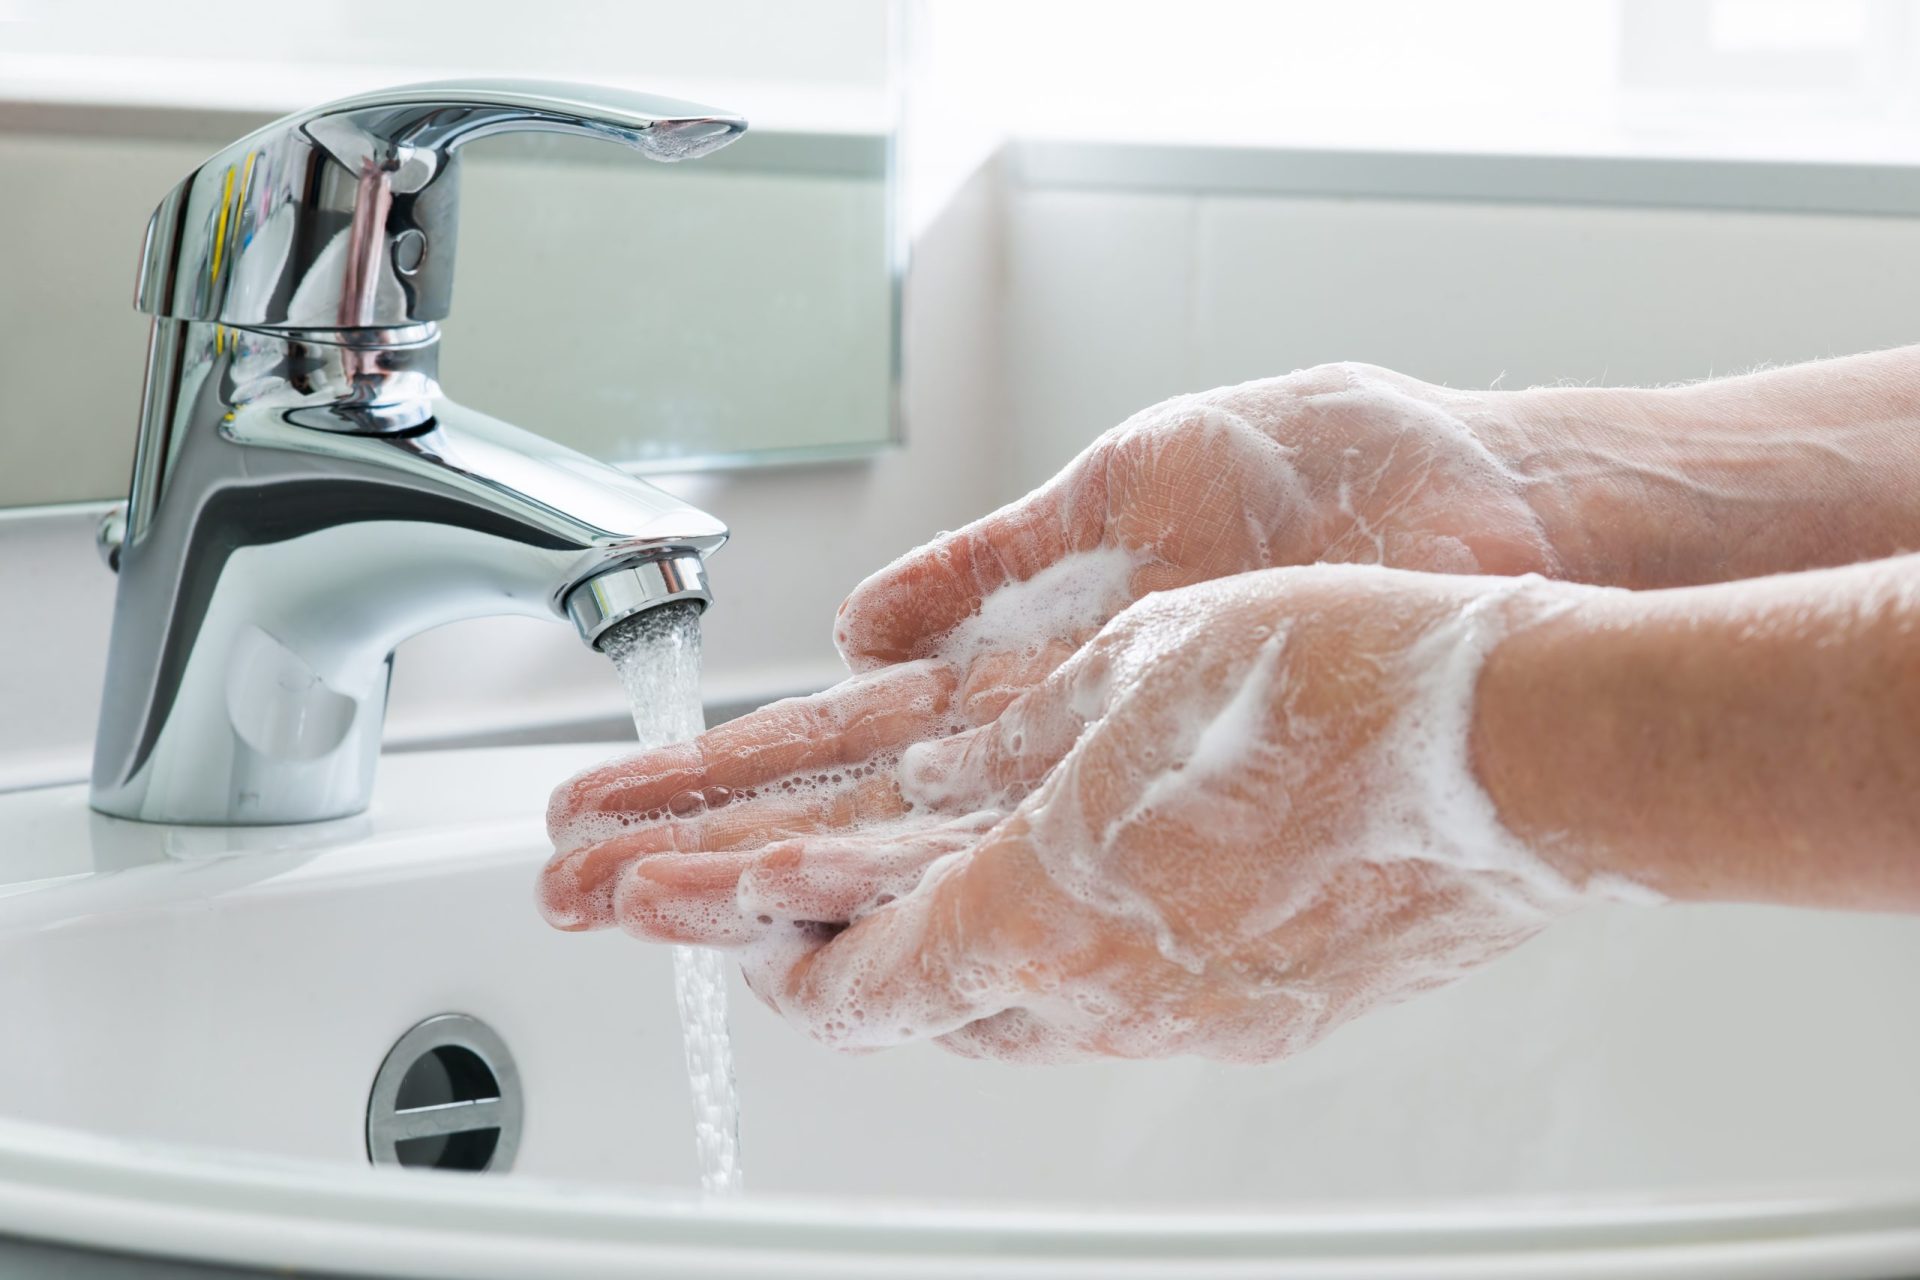 Este é o país europeu onde menos se lava as mãos após ir à casa de banho